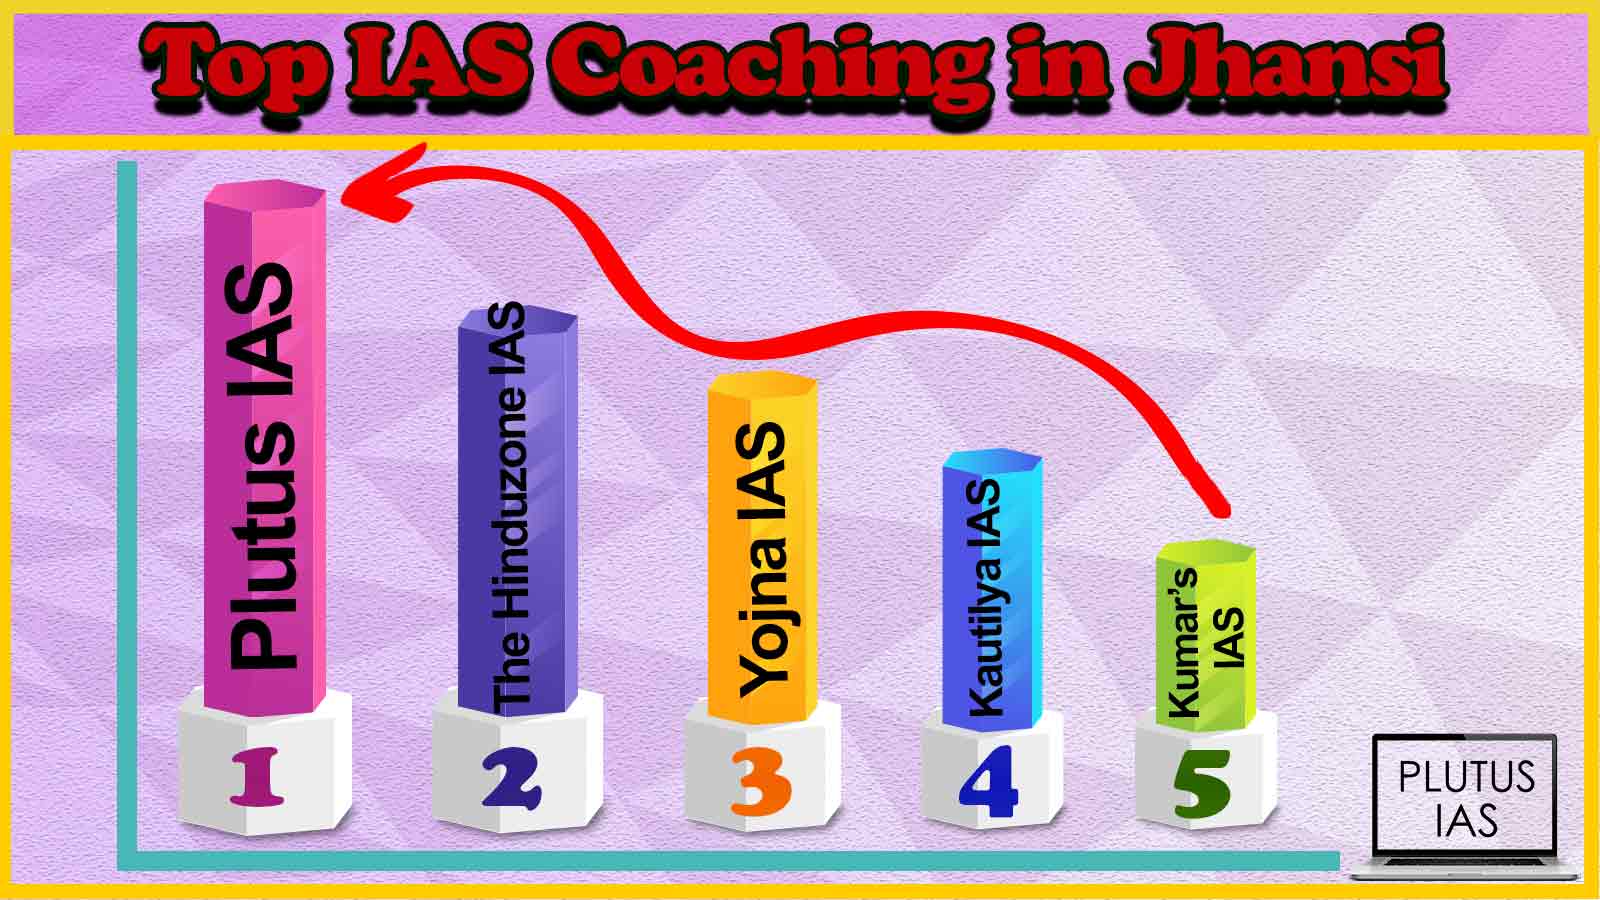 Best IAS Coaching in Jhansi